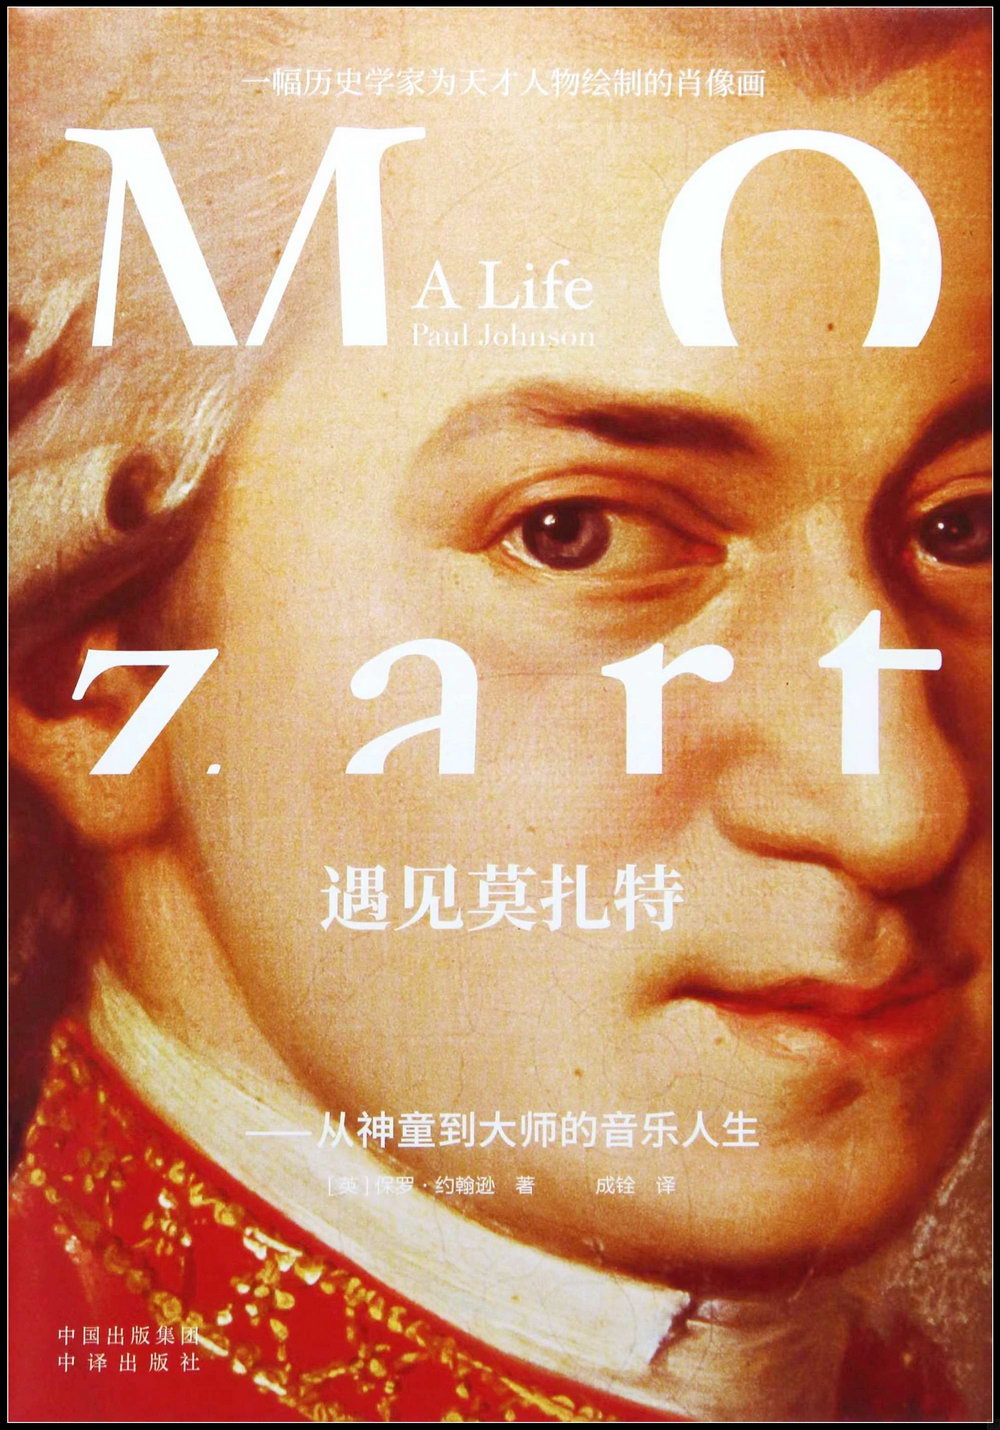 遇見莫扎特--從神童到大師的音樂人生